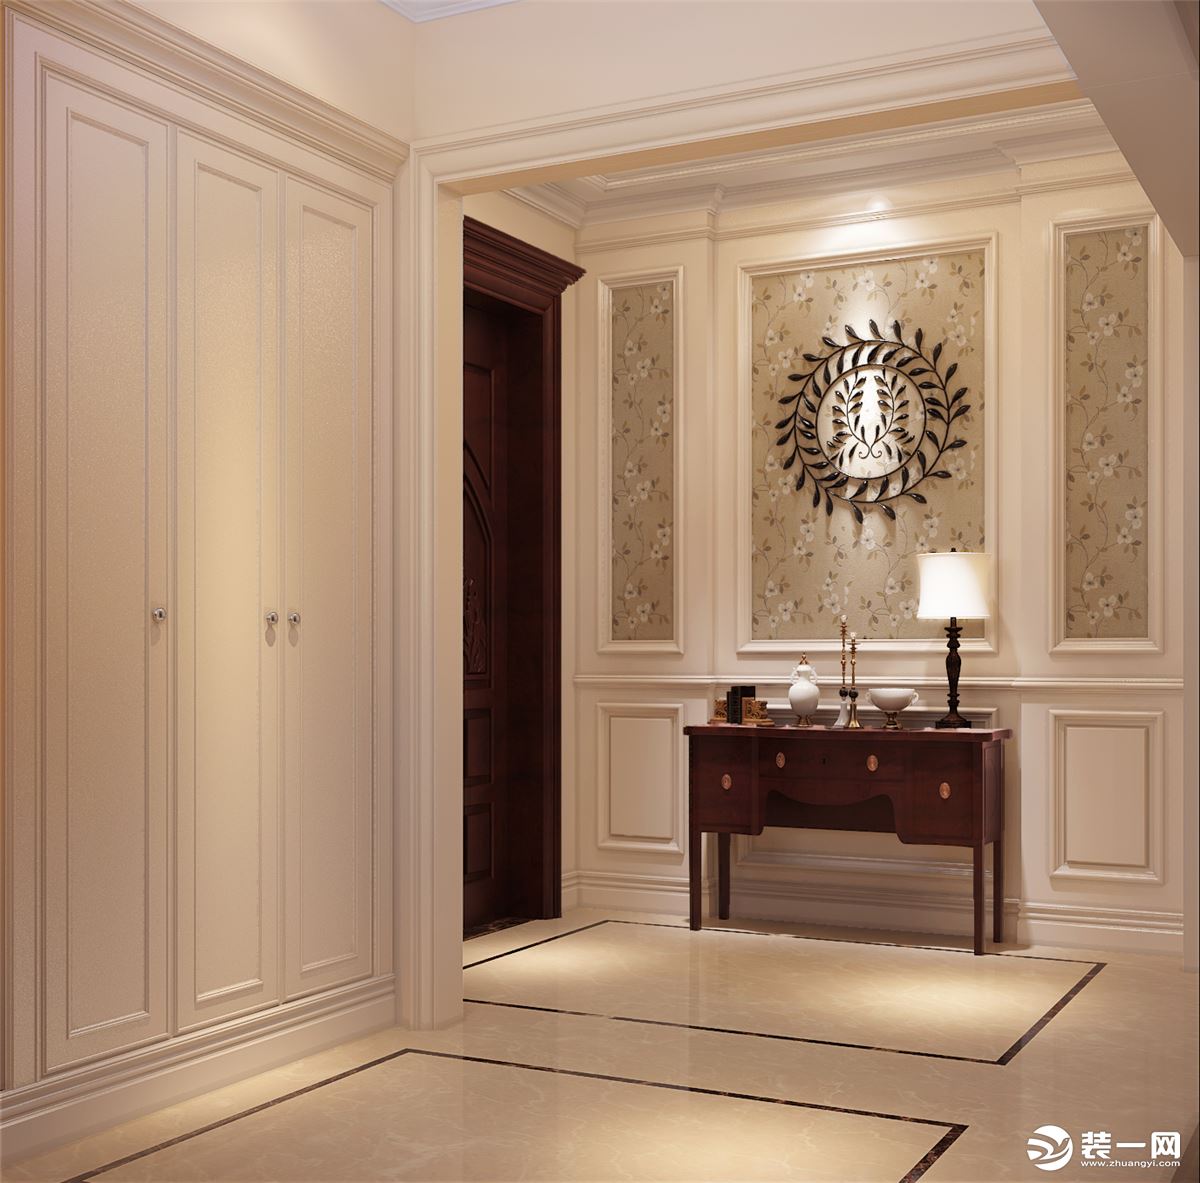 玄关 奶油色凹凸造型护墙板与木线结合美式的经典搭配、墙面的装饰挂件自然有味道。